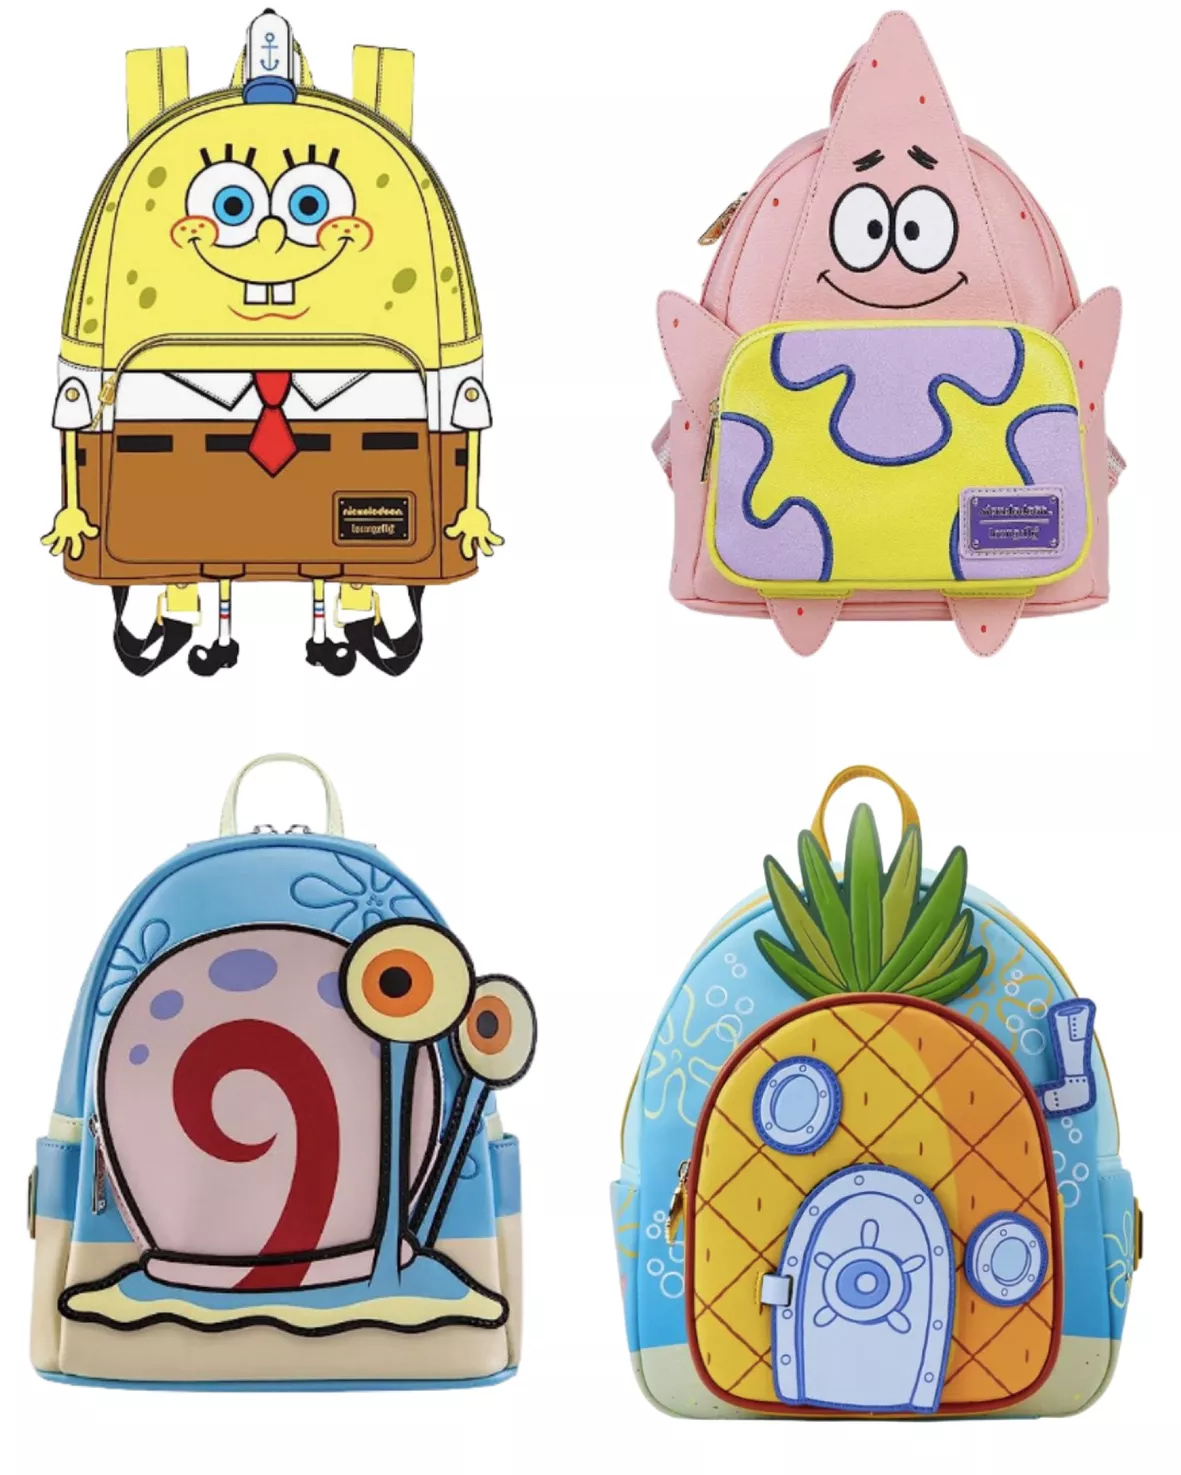 Nickelodeon Spongebob Squarepants … curated on LTK